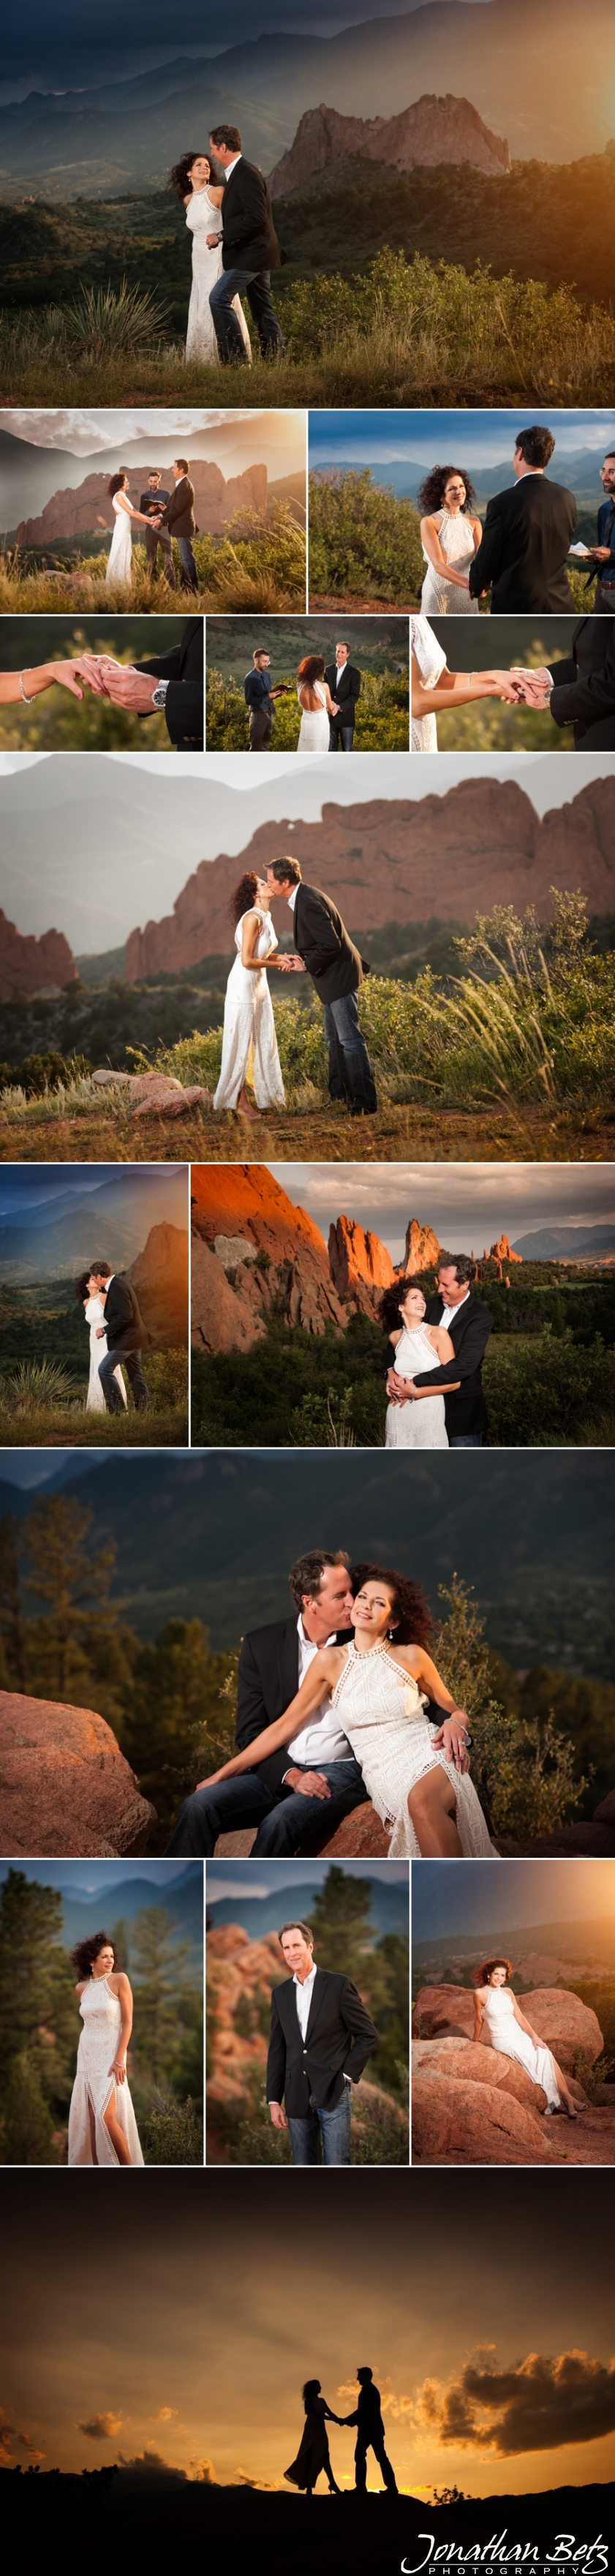 Colorado Springs Wedding Photographer Garden of the Gods elopements 1